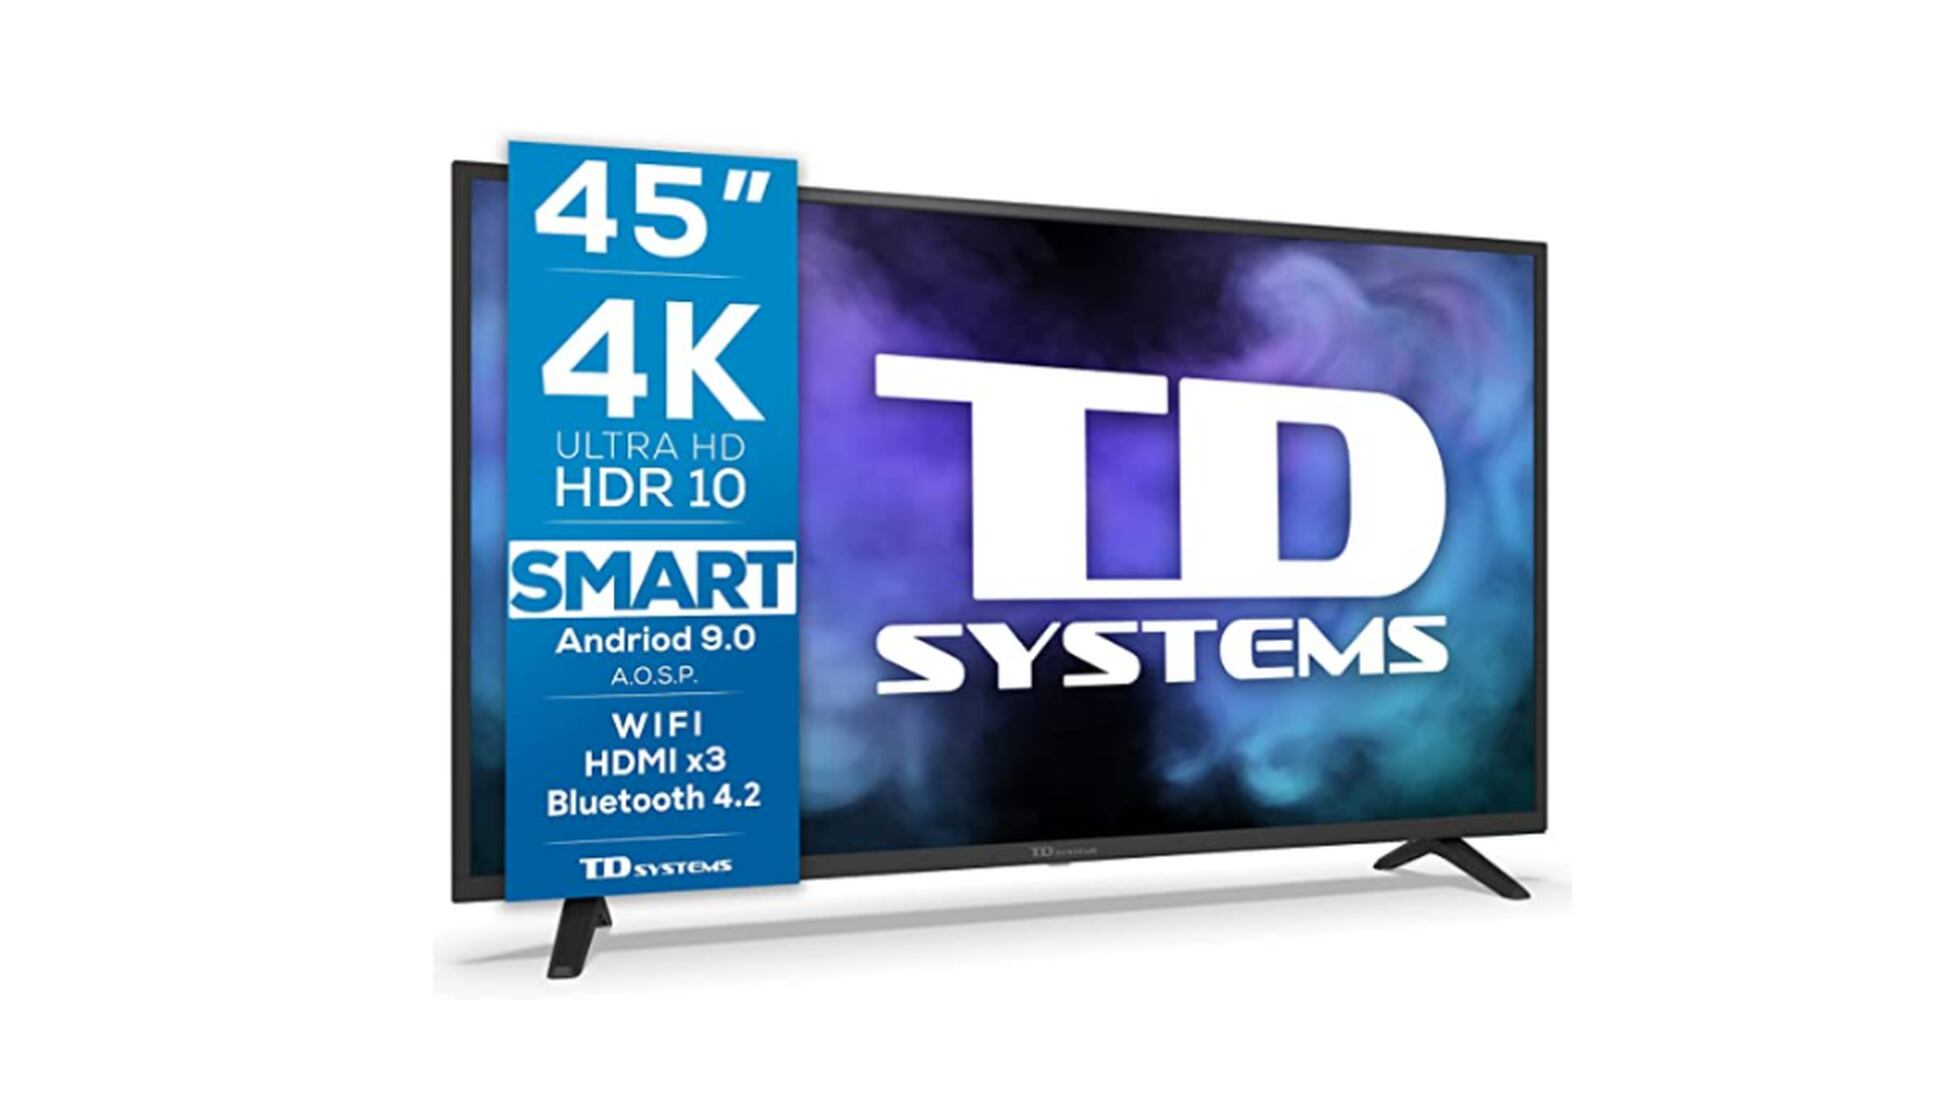 TD Systems sorprende con su oferta en este Smart TV. ¿Qué le hace